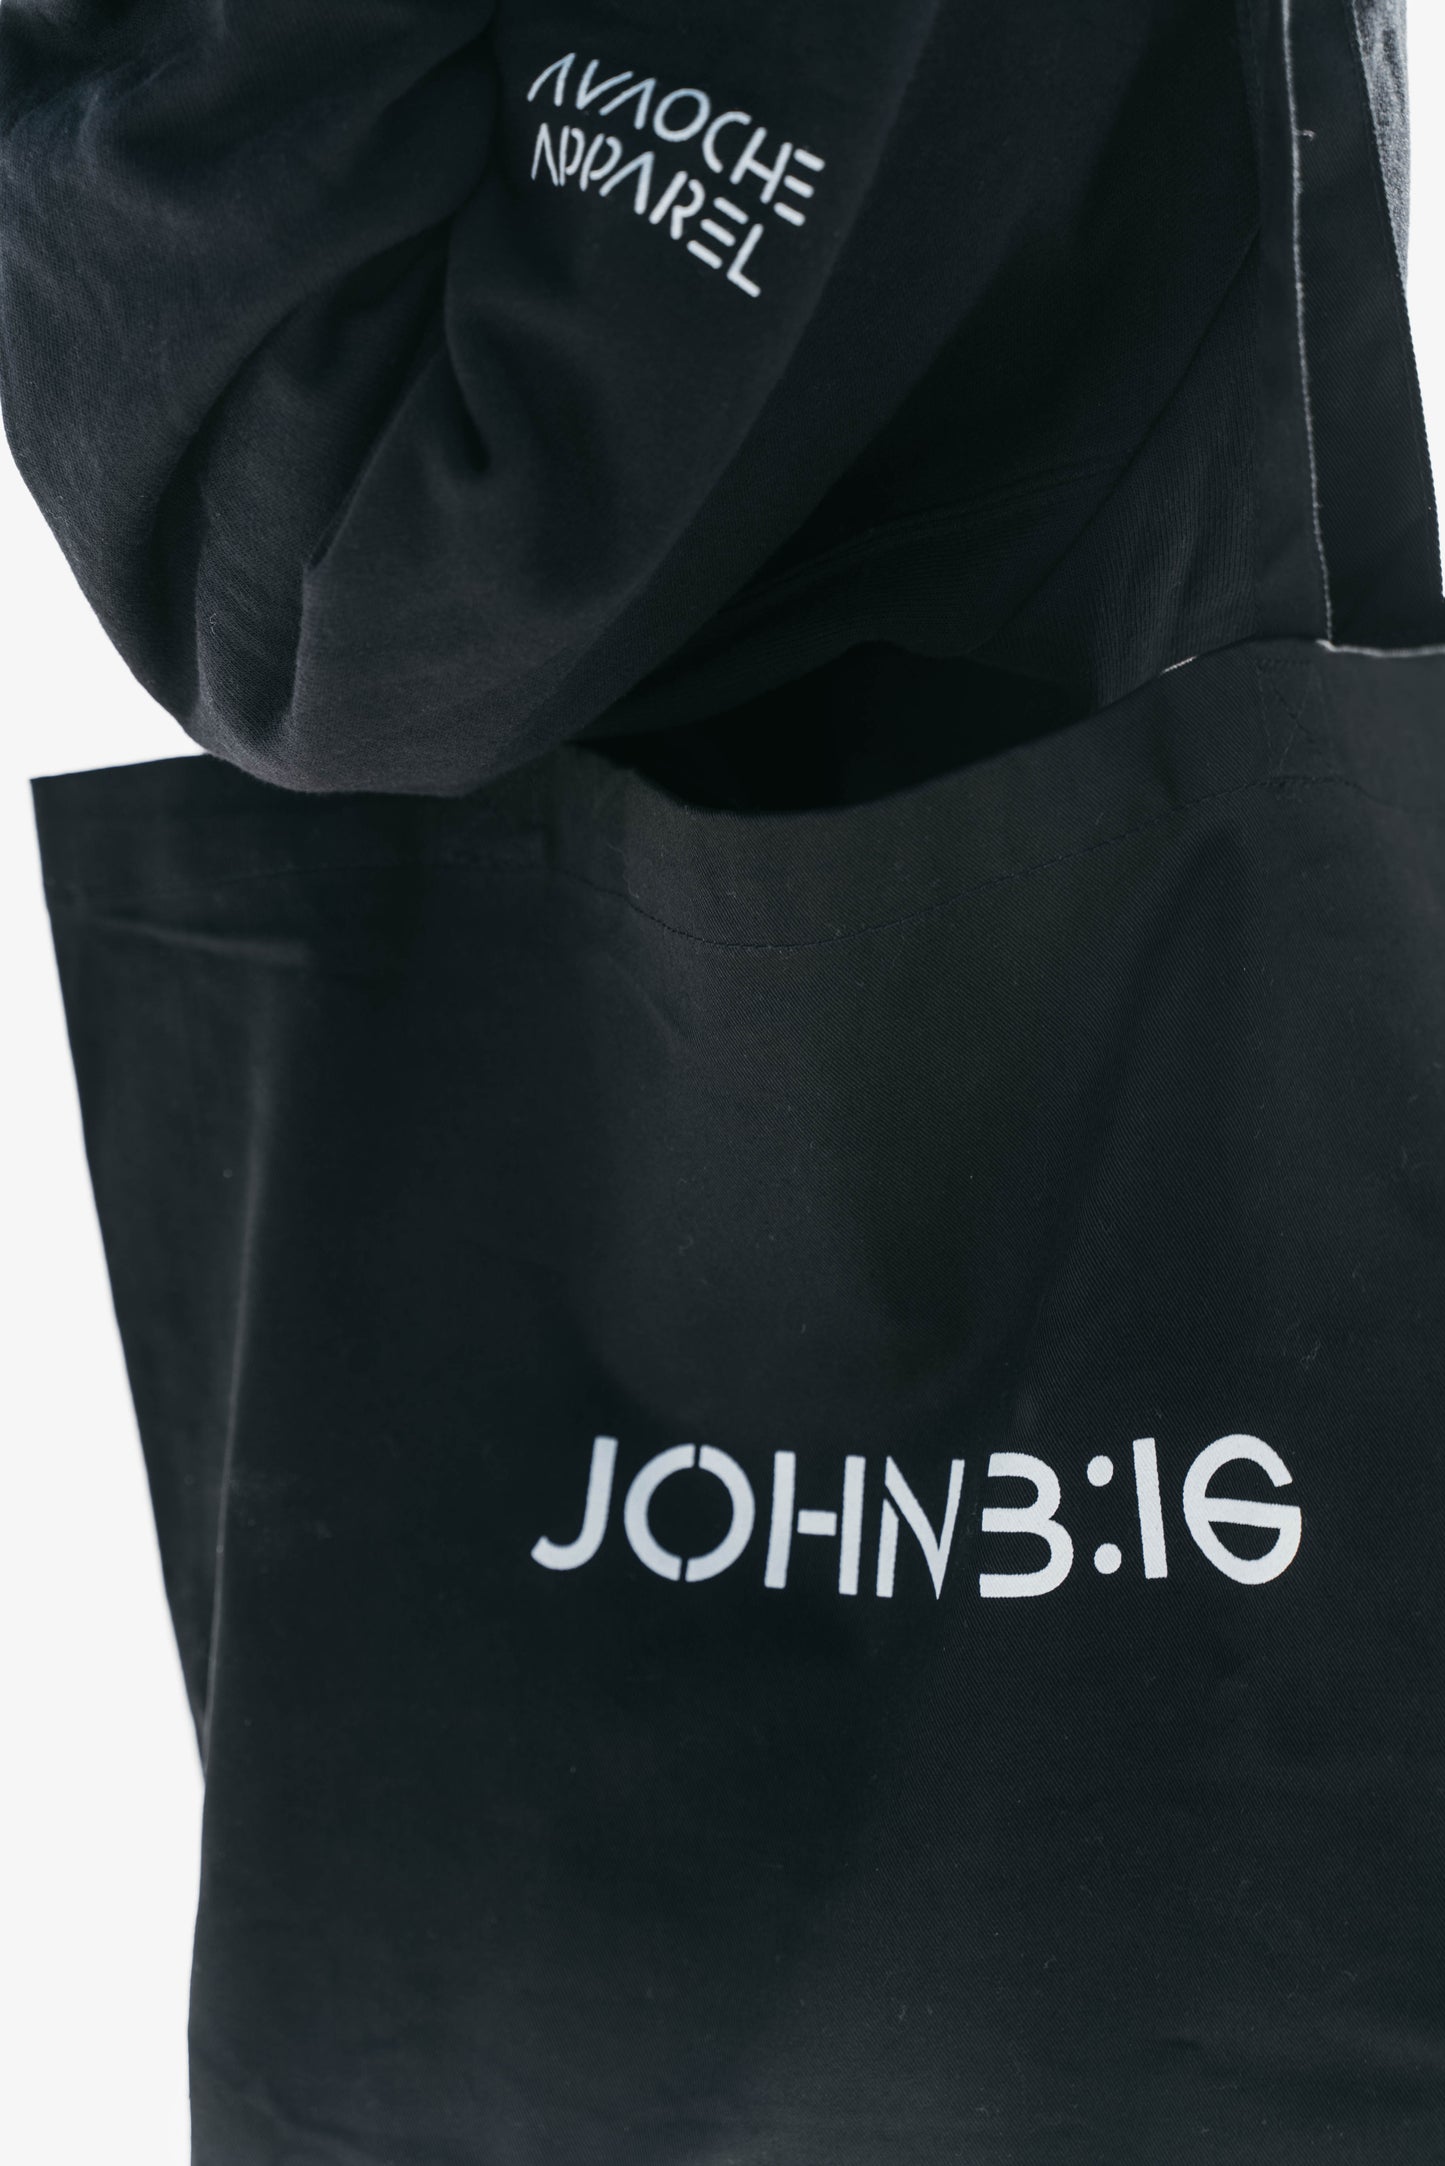 " JOHN 3:16 " Organic Black Tote Bag